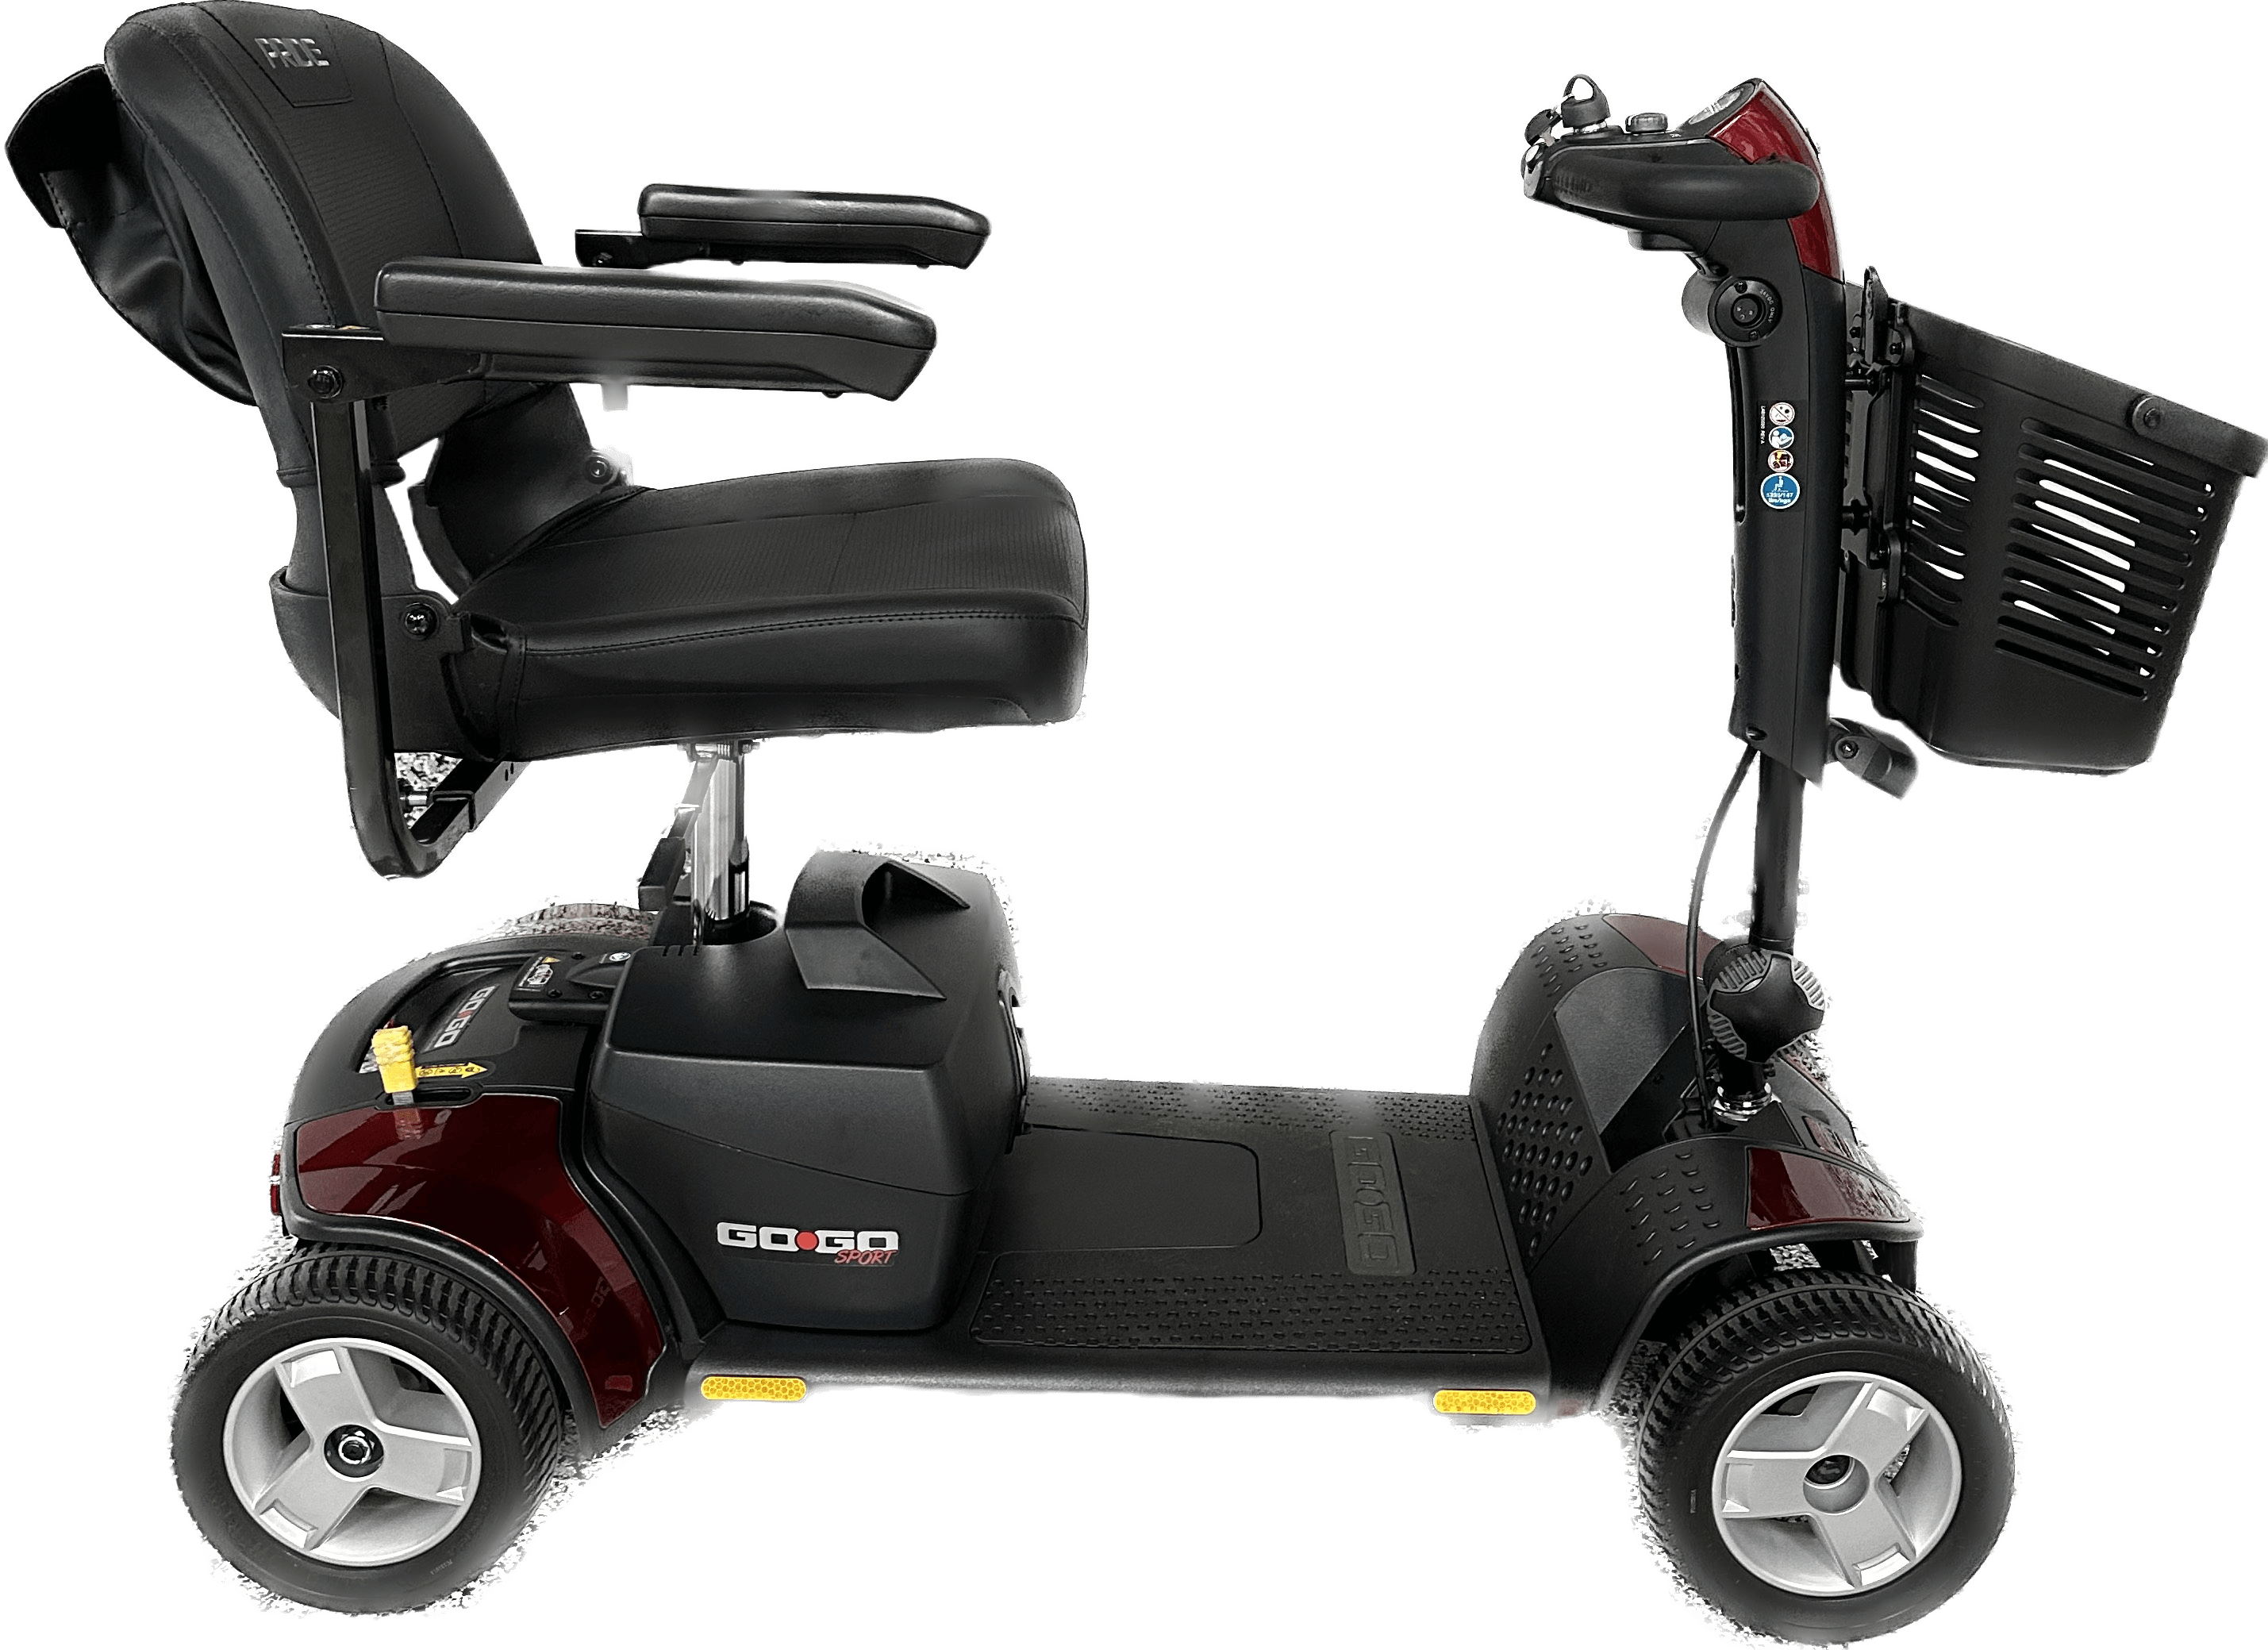 Multiday Mobility & ECV Travel Scooter Rental 300 Pound Capacity (3 or more days) - scooterkingorlando.com